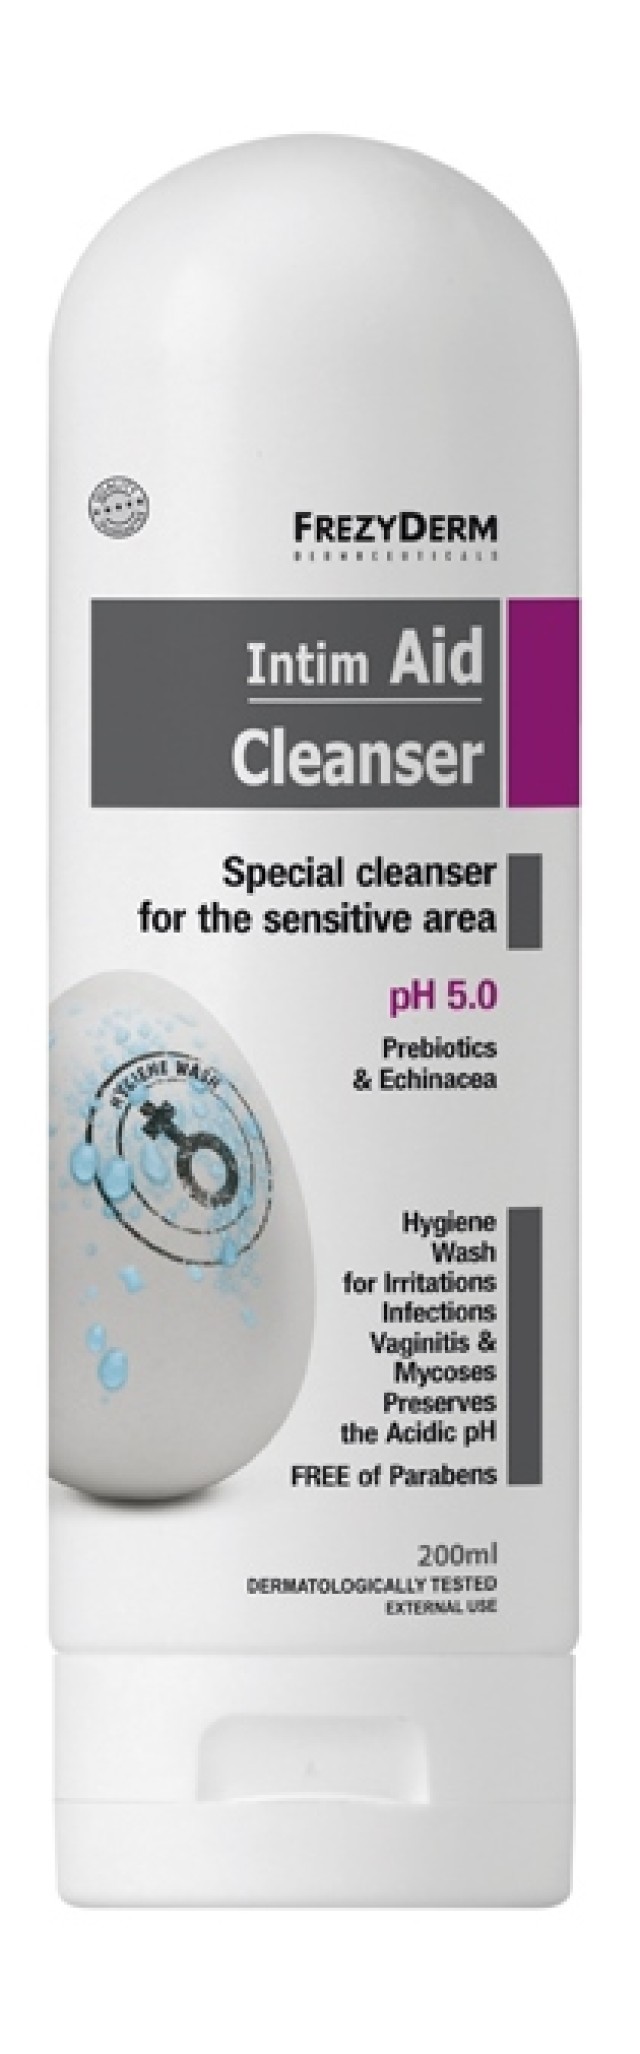 Frezyderm Intim Aid Cleanser pH5 Εξειδικευμένο Καθαριστικό για την Ευαίσθητη Περιοχή, 200ml